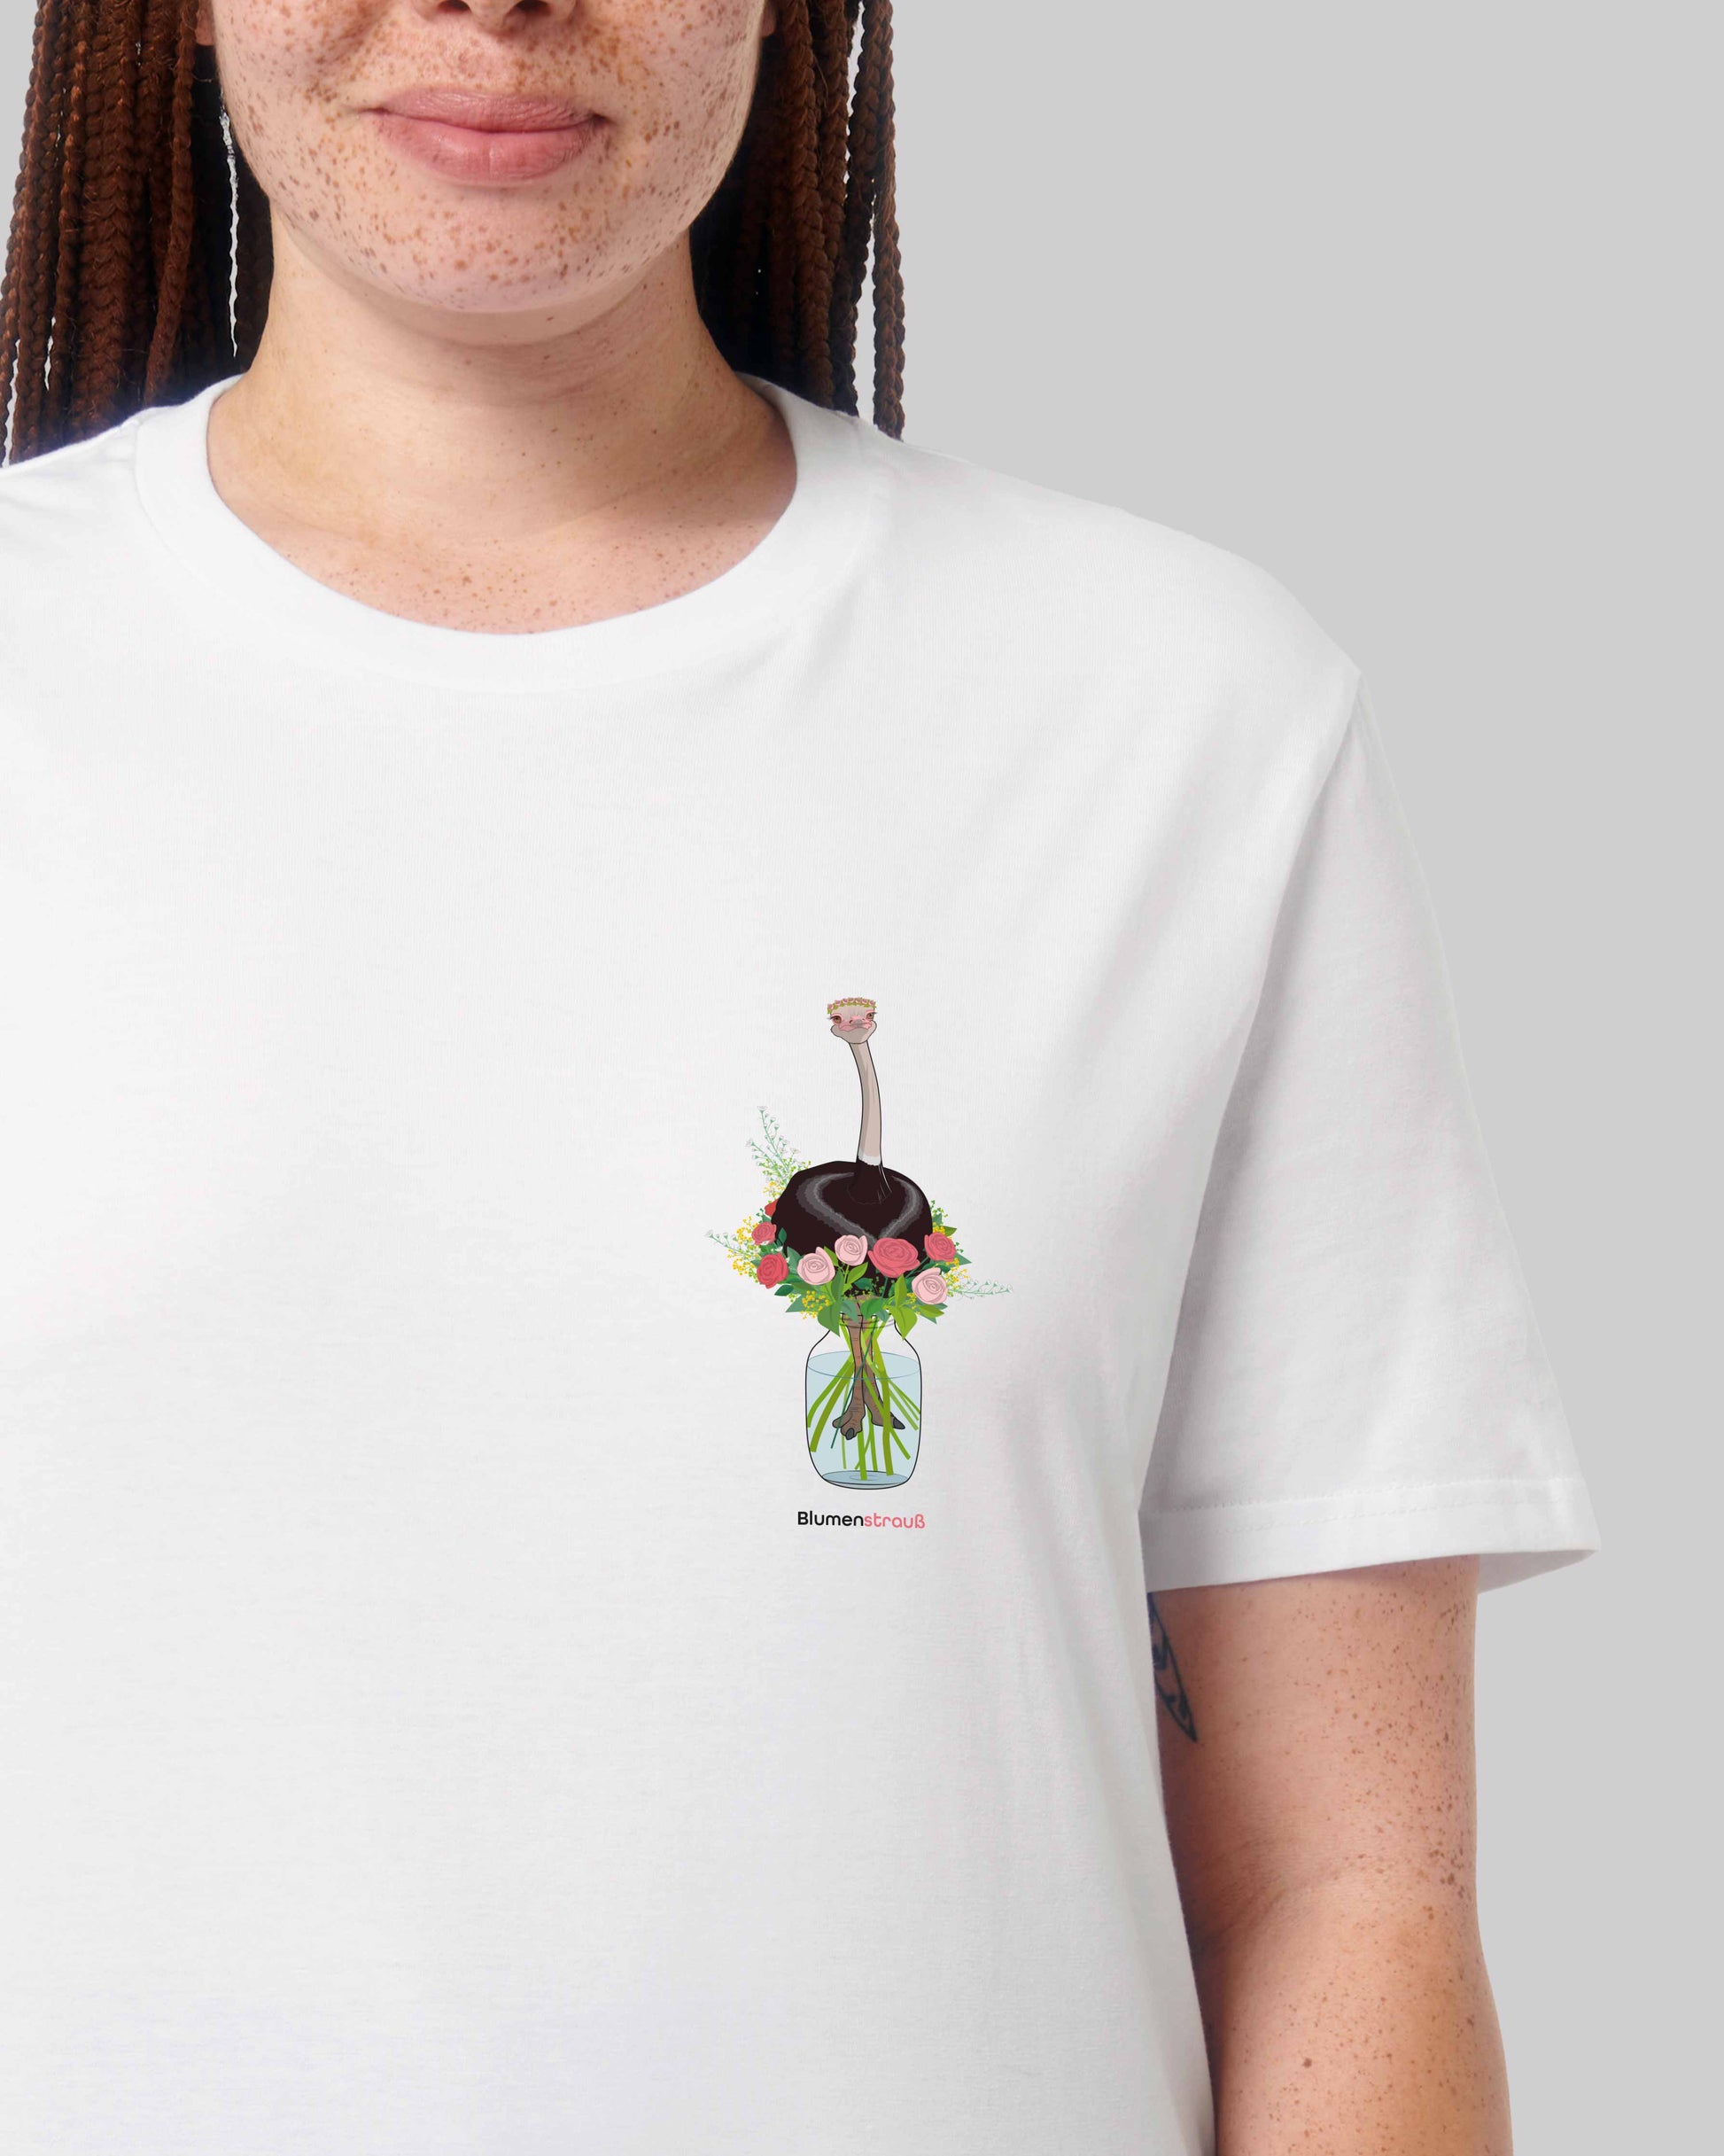 EINHORST® unisex organic Shirt in Weiß mit dem Motiv "Blumenstrauß", Bild von weiblicher Person mit Shirt